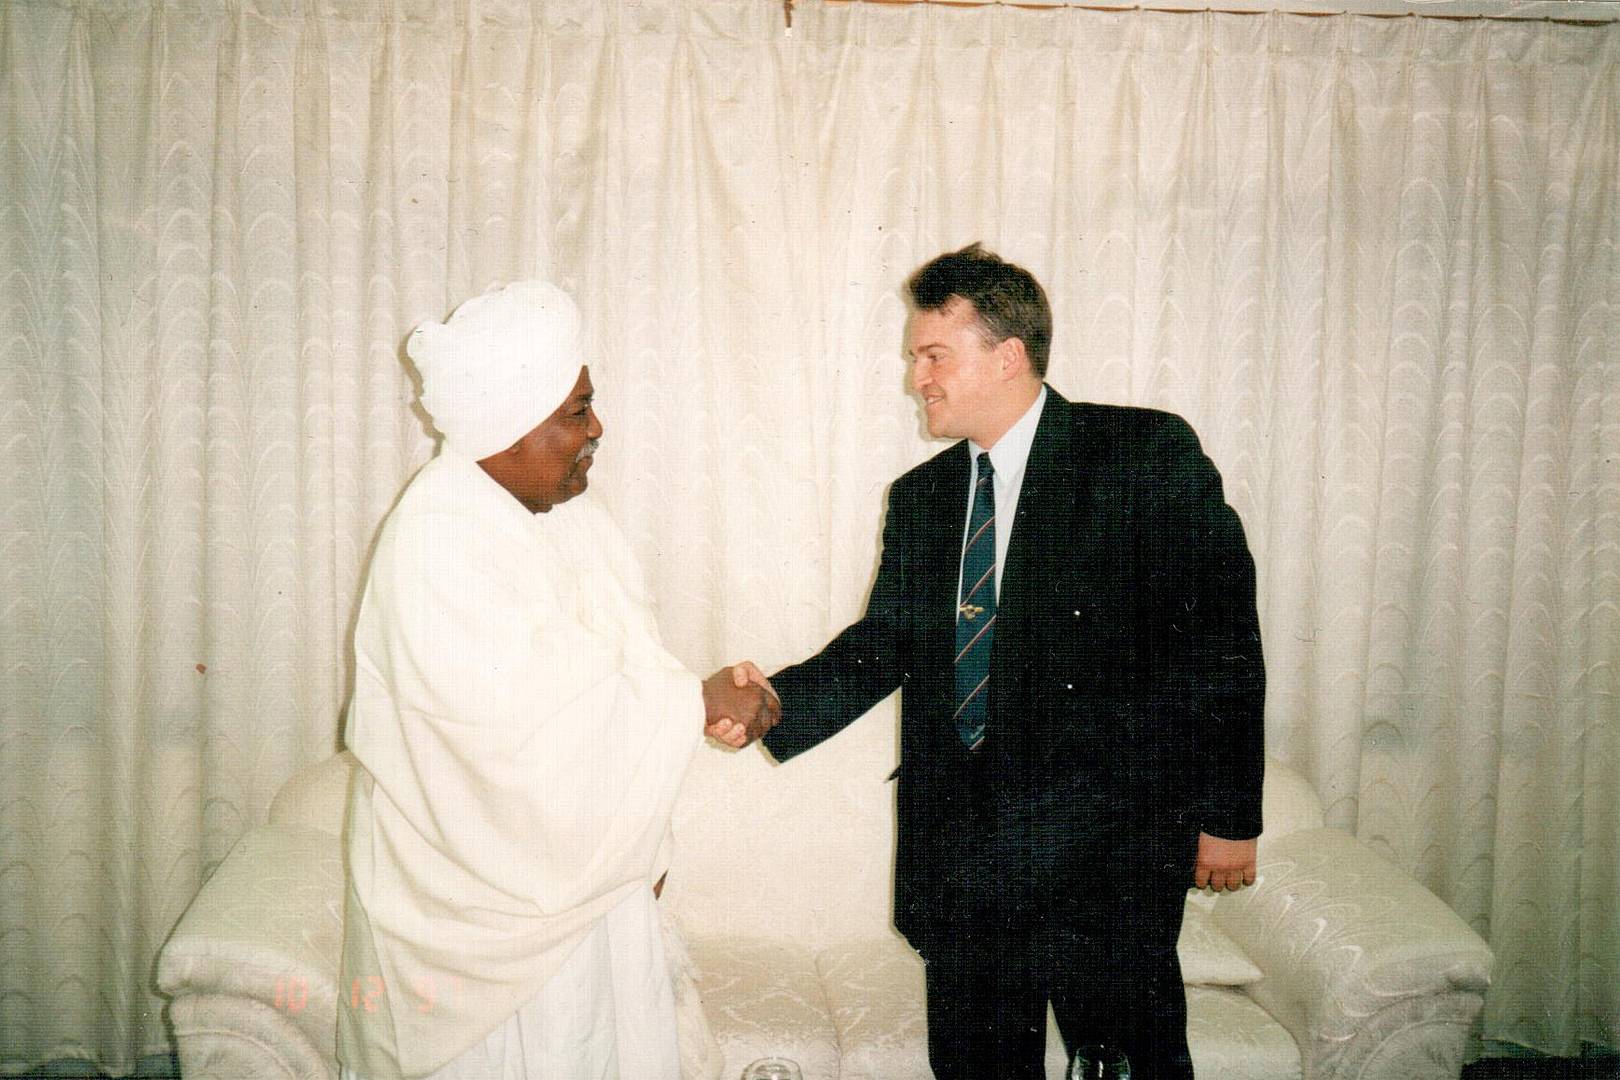 Рабочая встреча с послом Судана. Декабрь 1999 года, Ливия